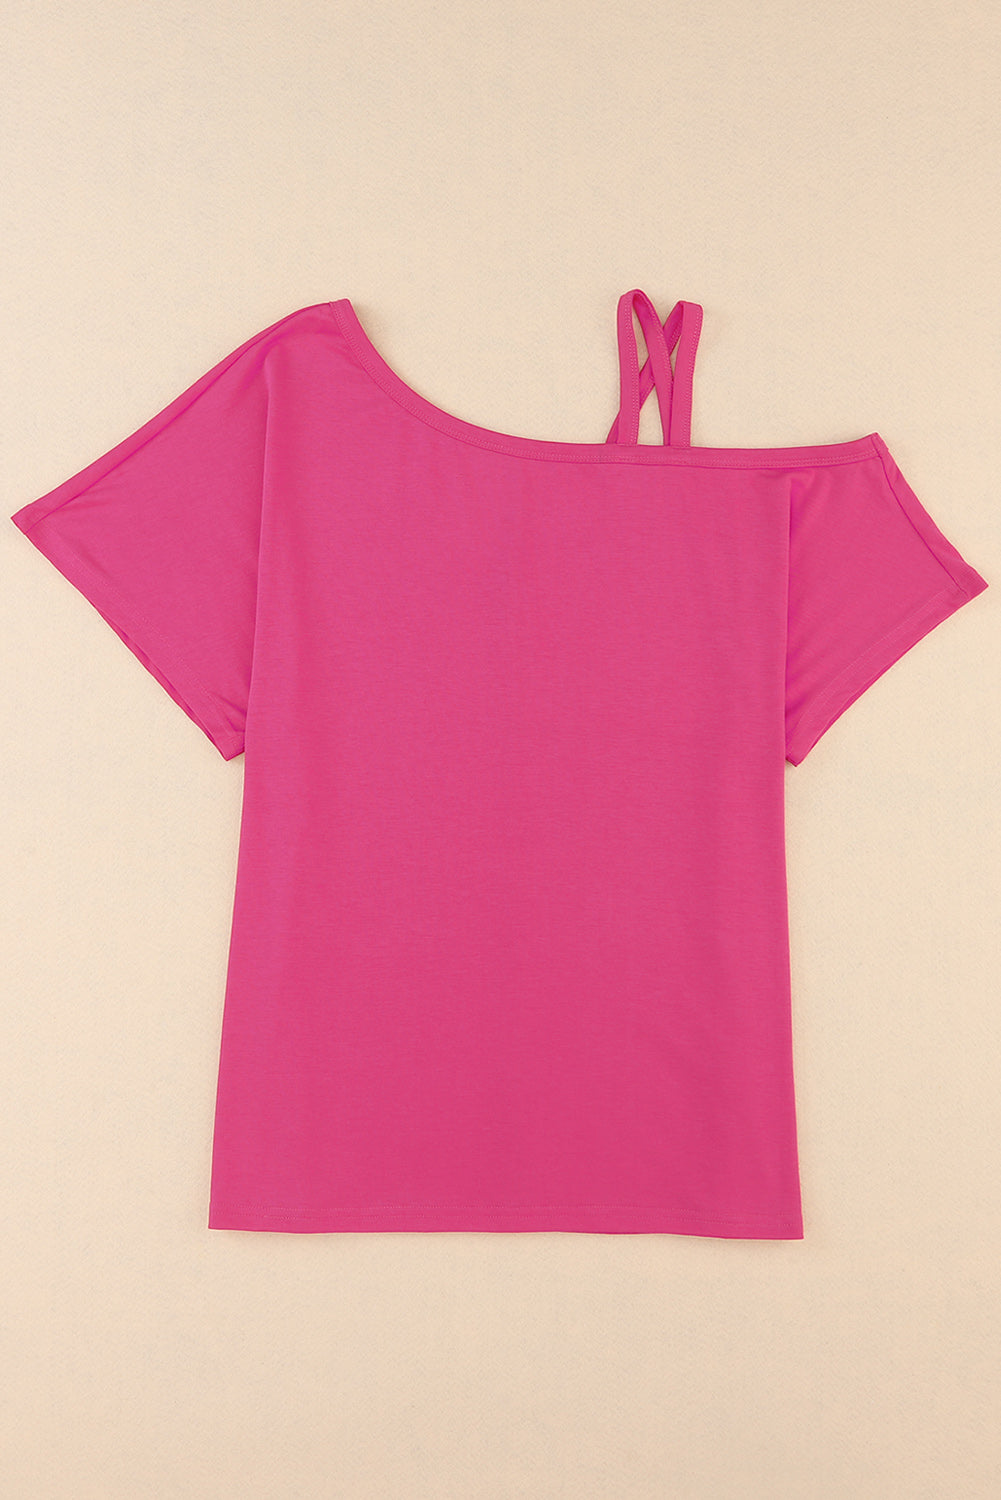 Rožnata asimetrična majica s križanimi rokavi na eno ramo